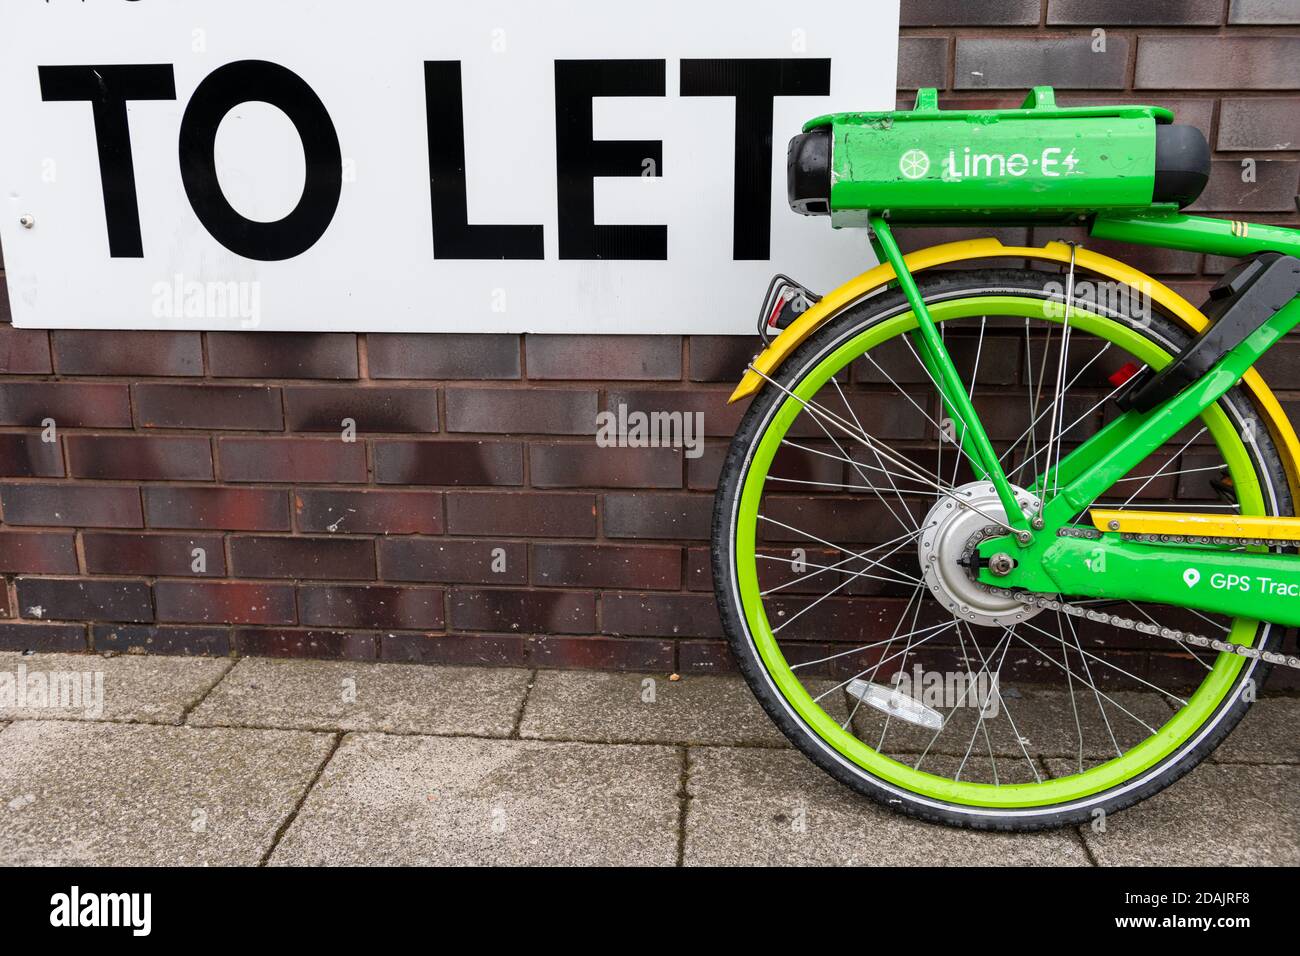 Lime- E Fahrradvermietung. Eine von mehreren Fahrradverleihfirmen, die in London tätig sind. Stockfoto